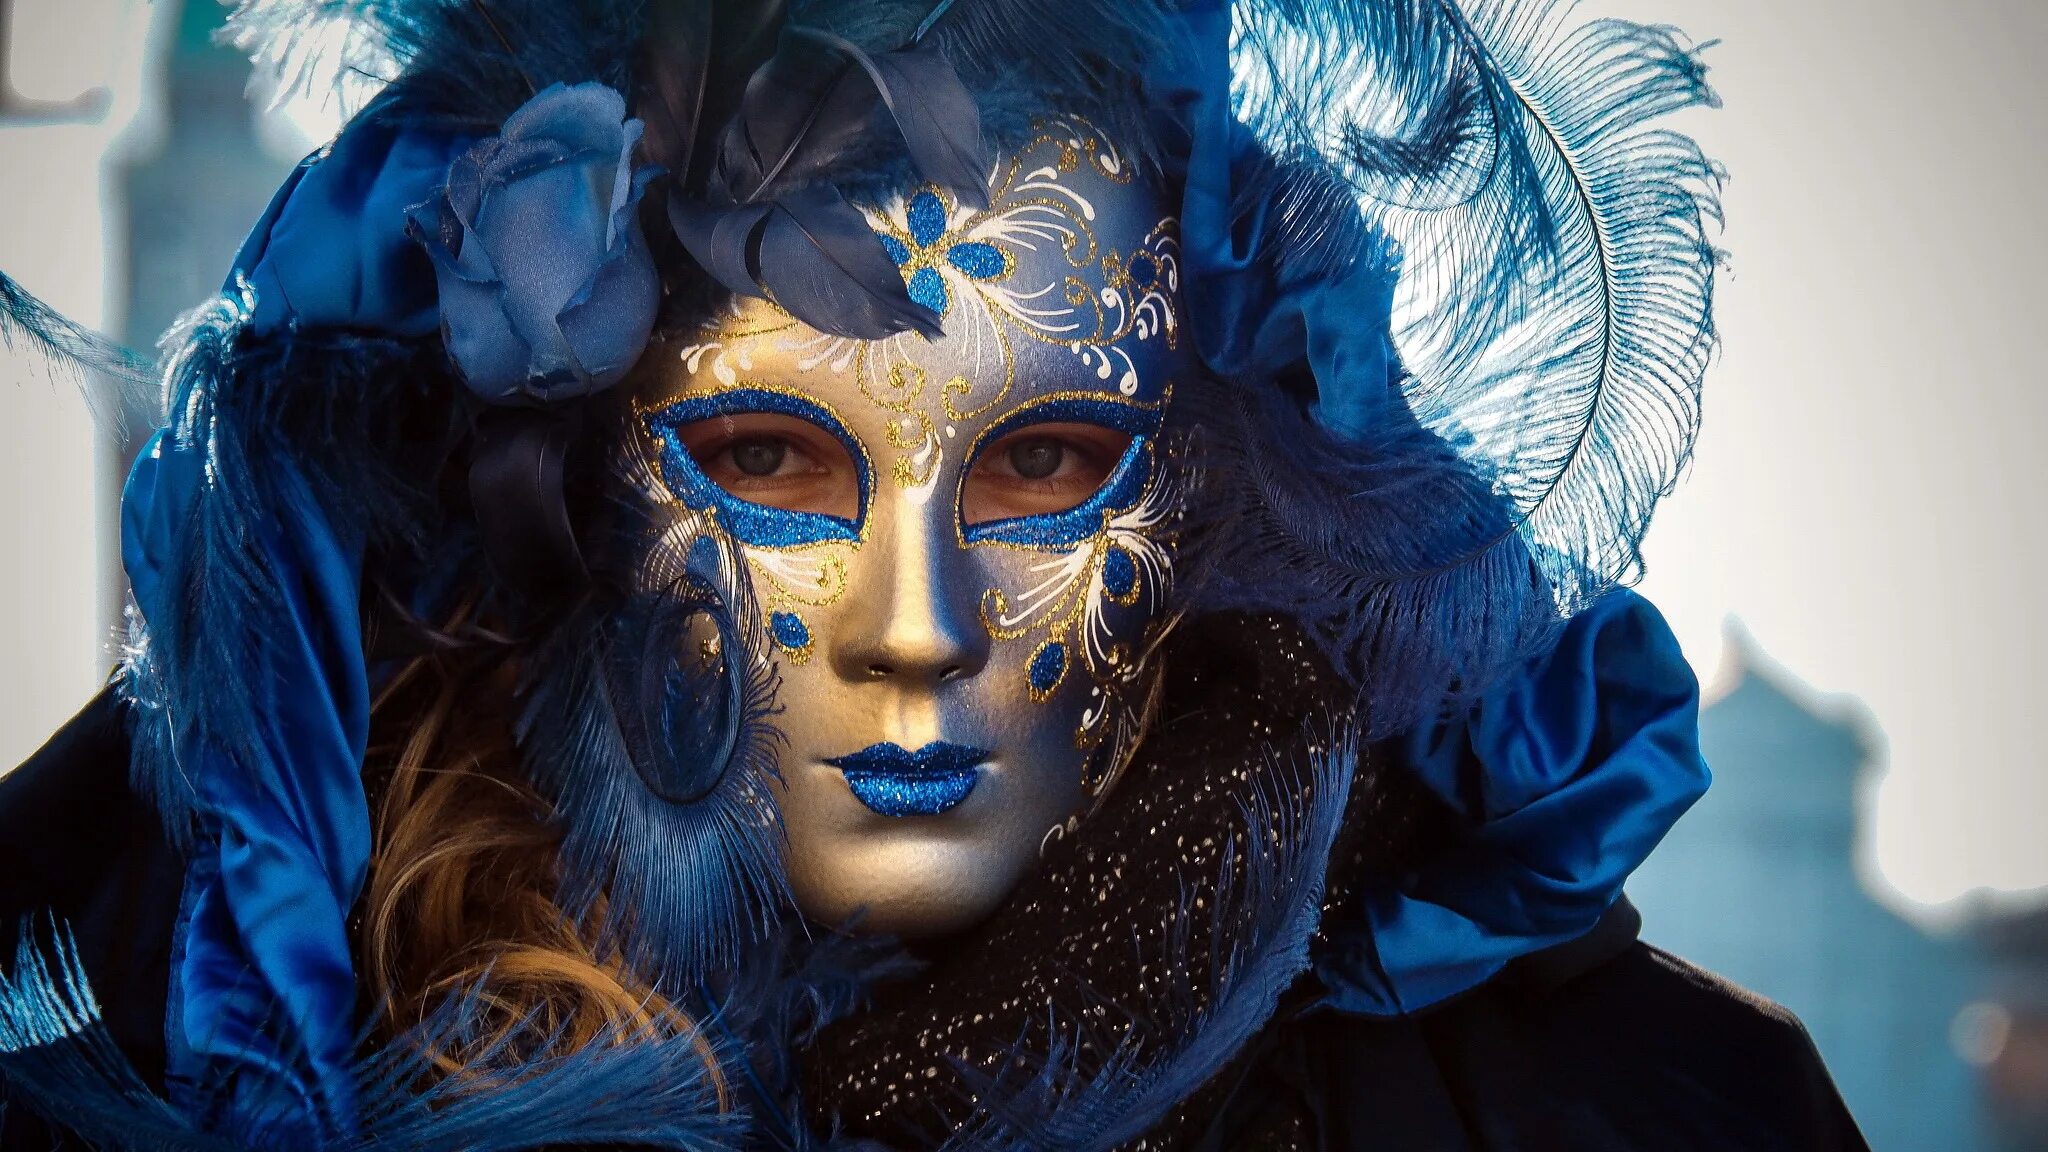 Самая красивая маска. Венецианский карнавал Коломбина. Маска Венеция для карнавала. Педролино Венецианский карнавал. Девушка в венецианском стиле.